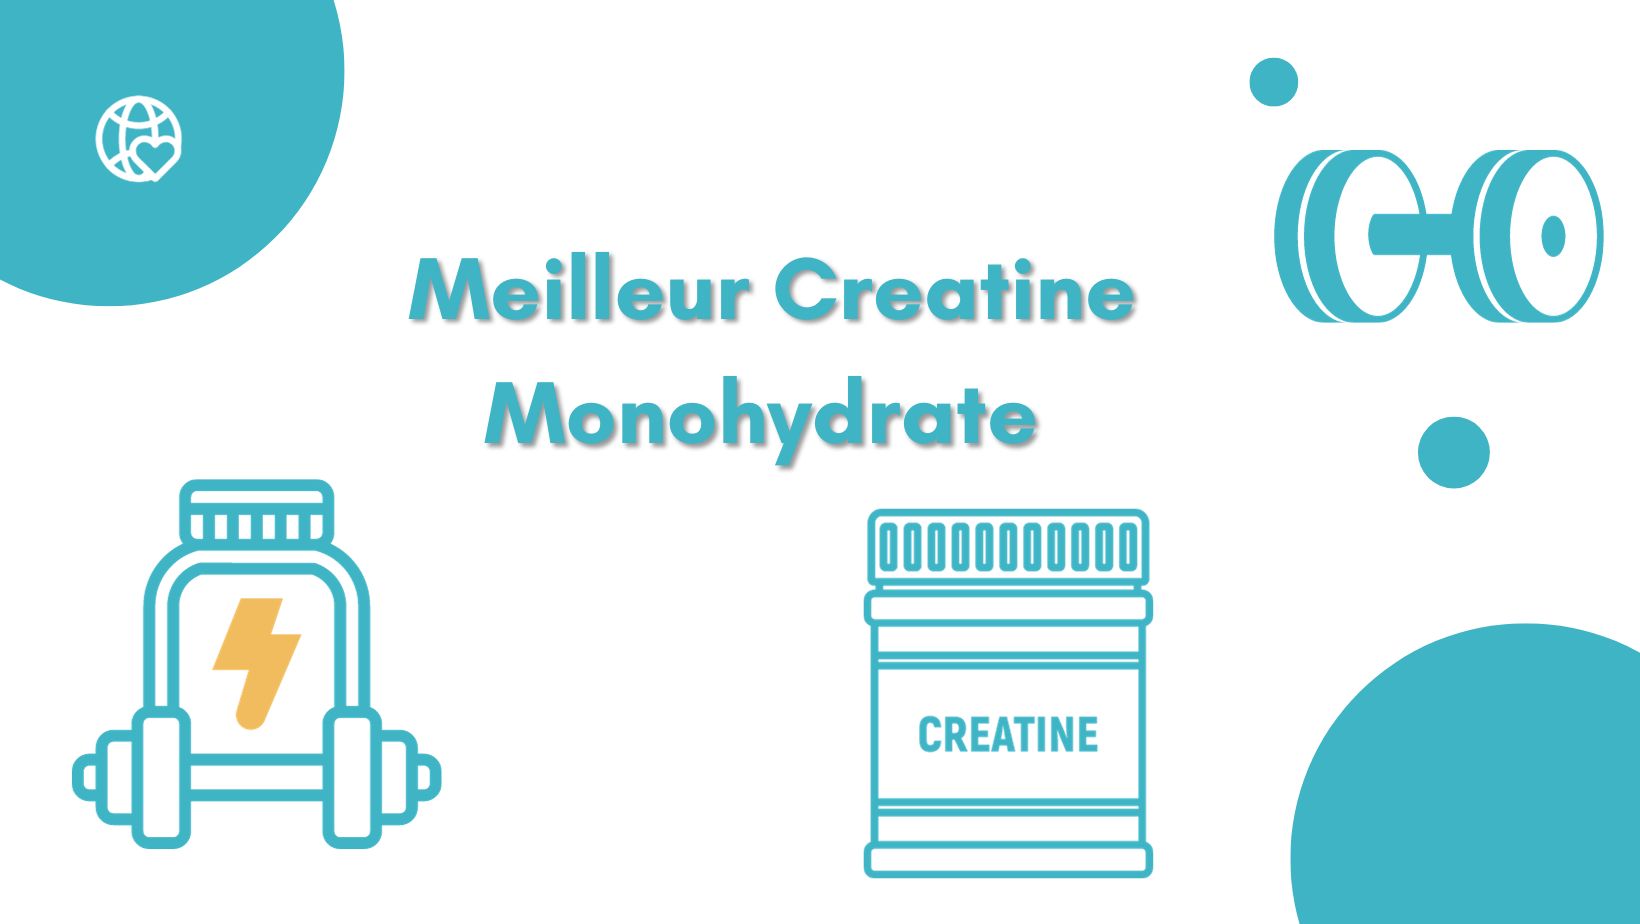 Meilleurs créatines monohydrate: Notre TOP 10